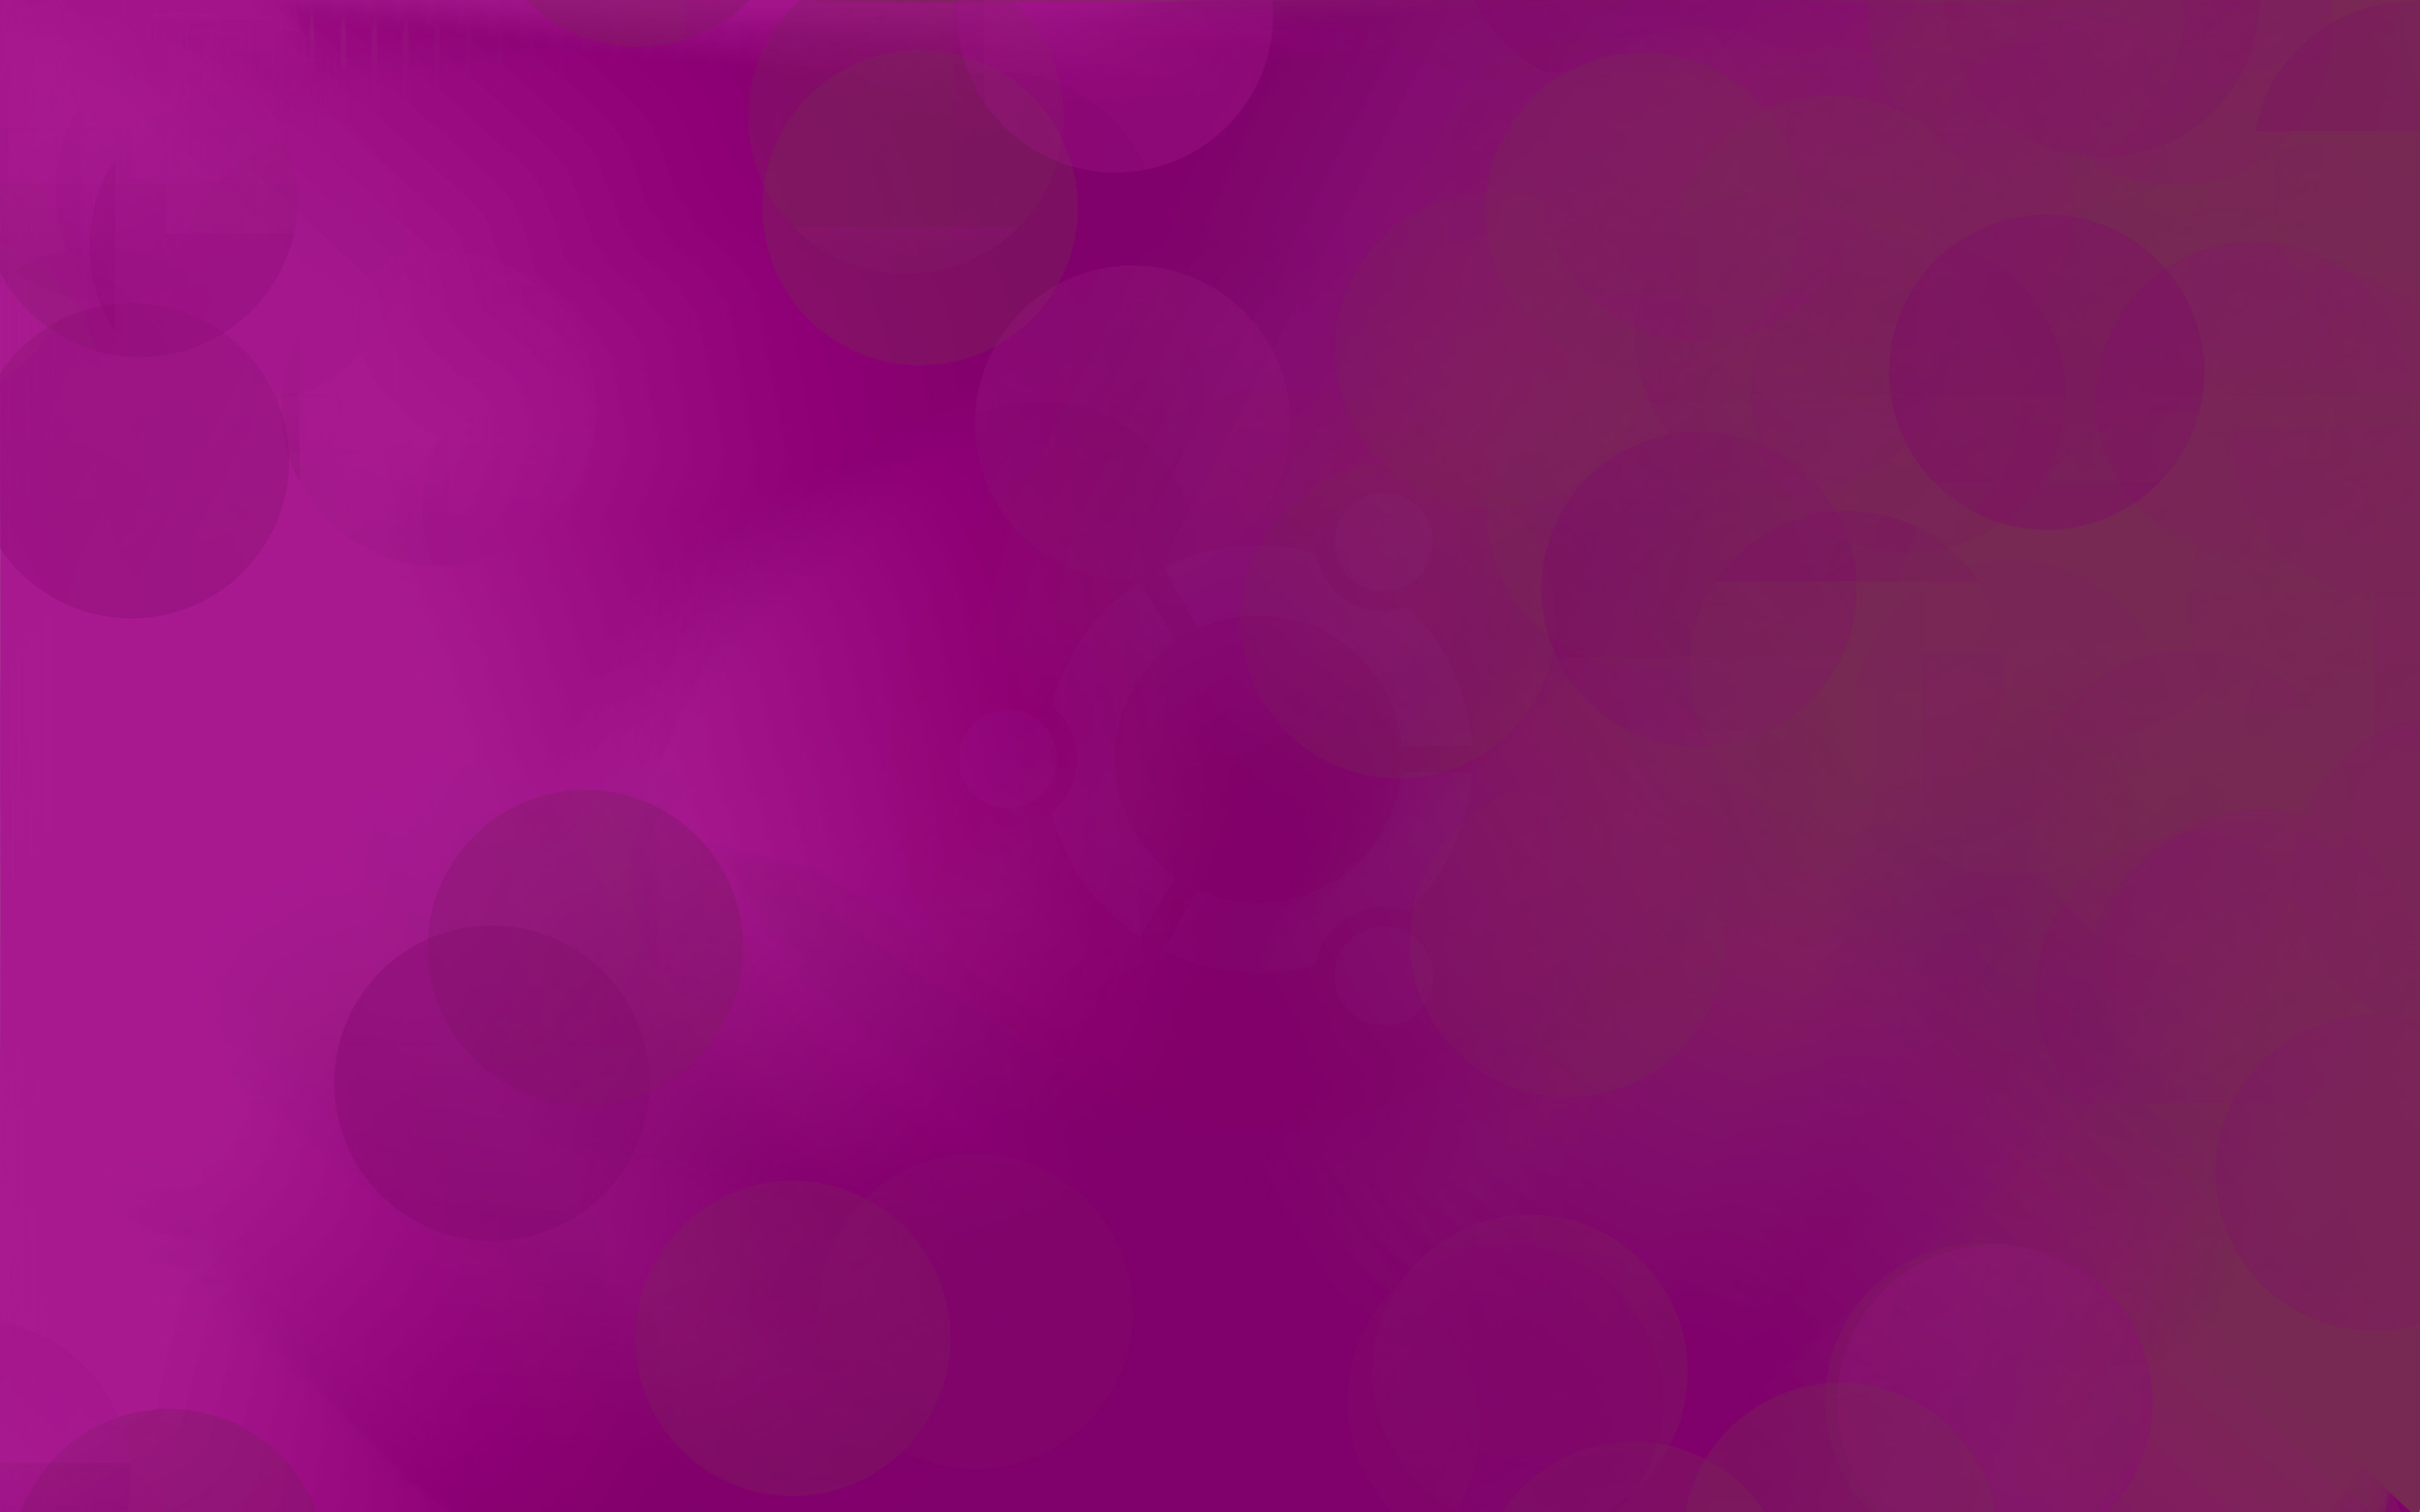 Ubuntu Stock Pink 4K Hình nền 4K Với những người yêu thích sự đặc biệt, hãy khám phá những hình nền Ubuntu Stock Pink 4K Hình nền 4K này. Những hình ảnh tuyệt đẹp, đầy sáng tạo với độ phân giải cao sẽ tạo ra sự thích thú khi trang trí trang máy tính của bạn. Hãy tải về ngay để trải nghiệm.